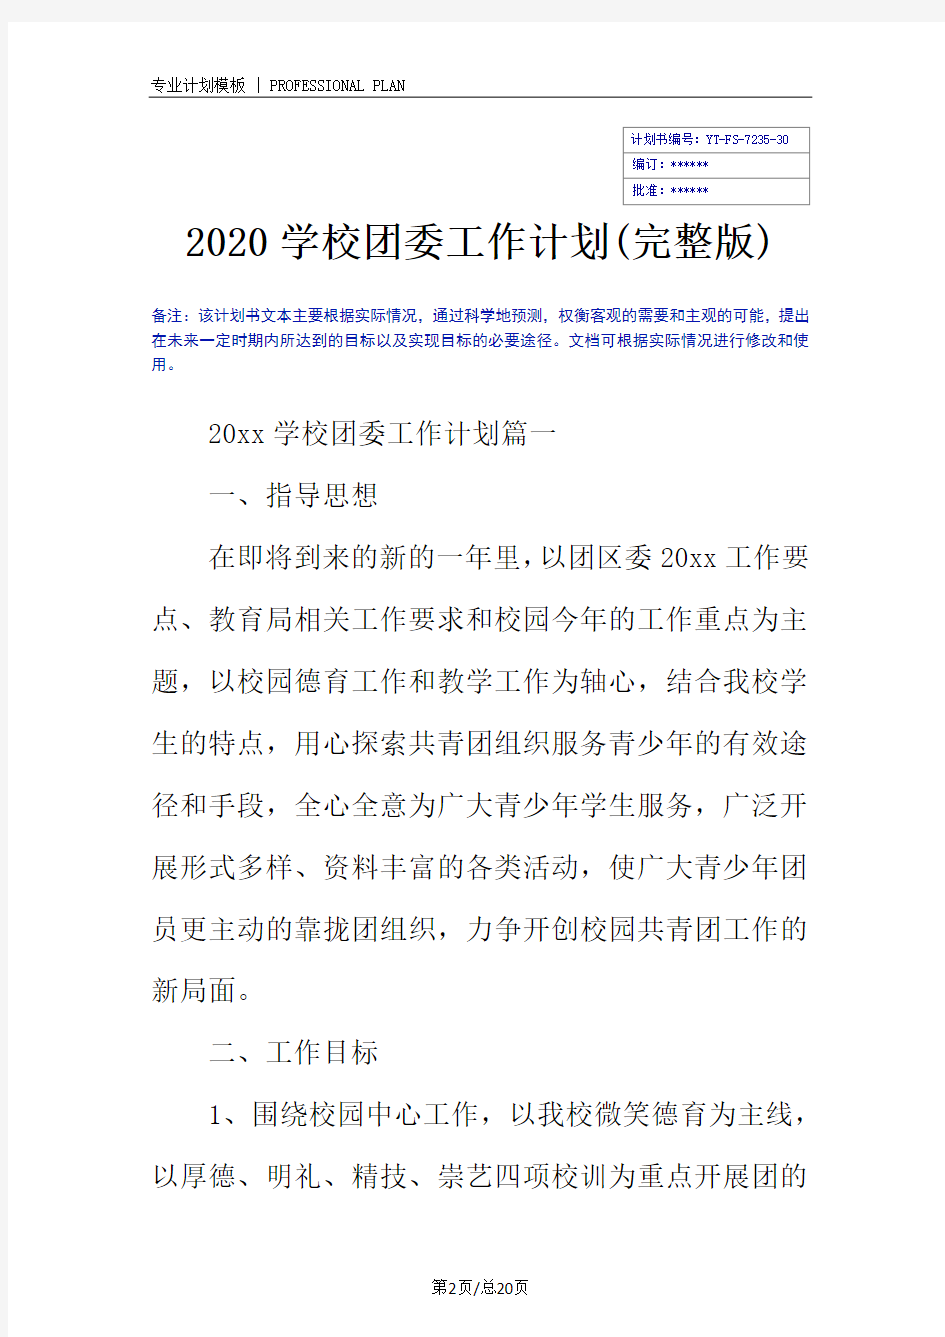 2020学校团委工作计划(完整版)